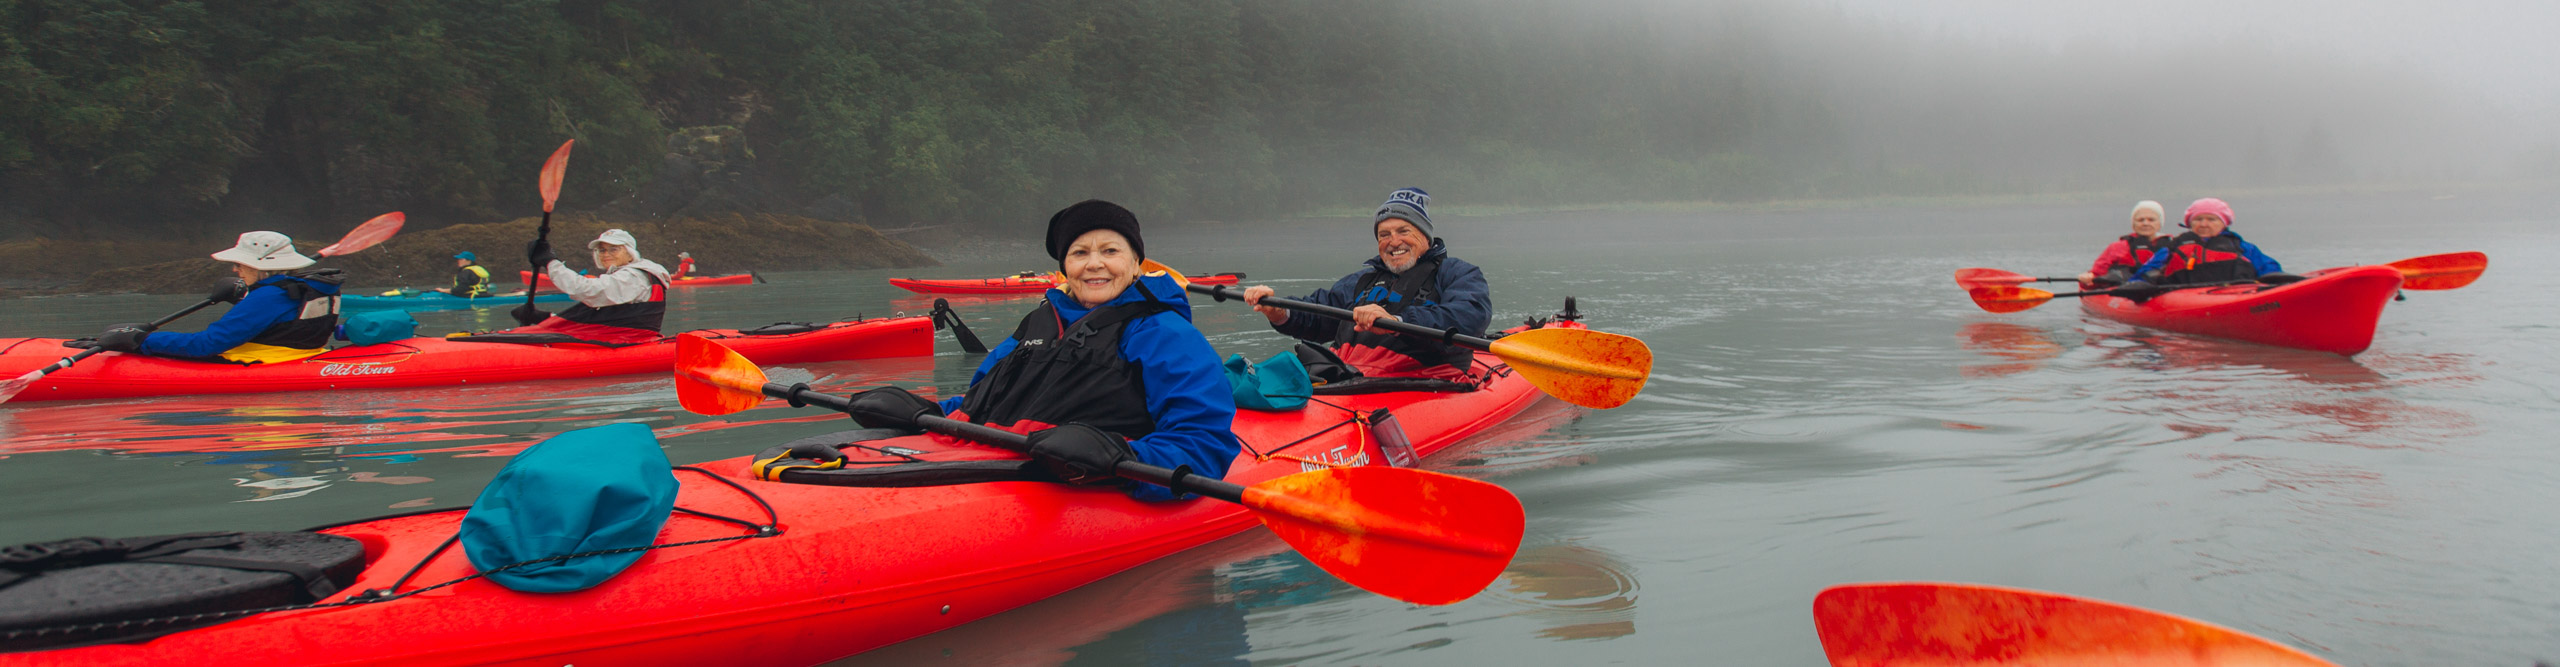 Group kayaking on a misty day in Alaska, USA